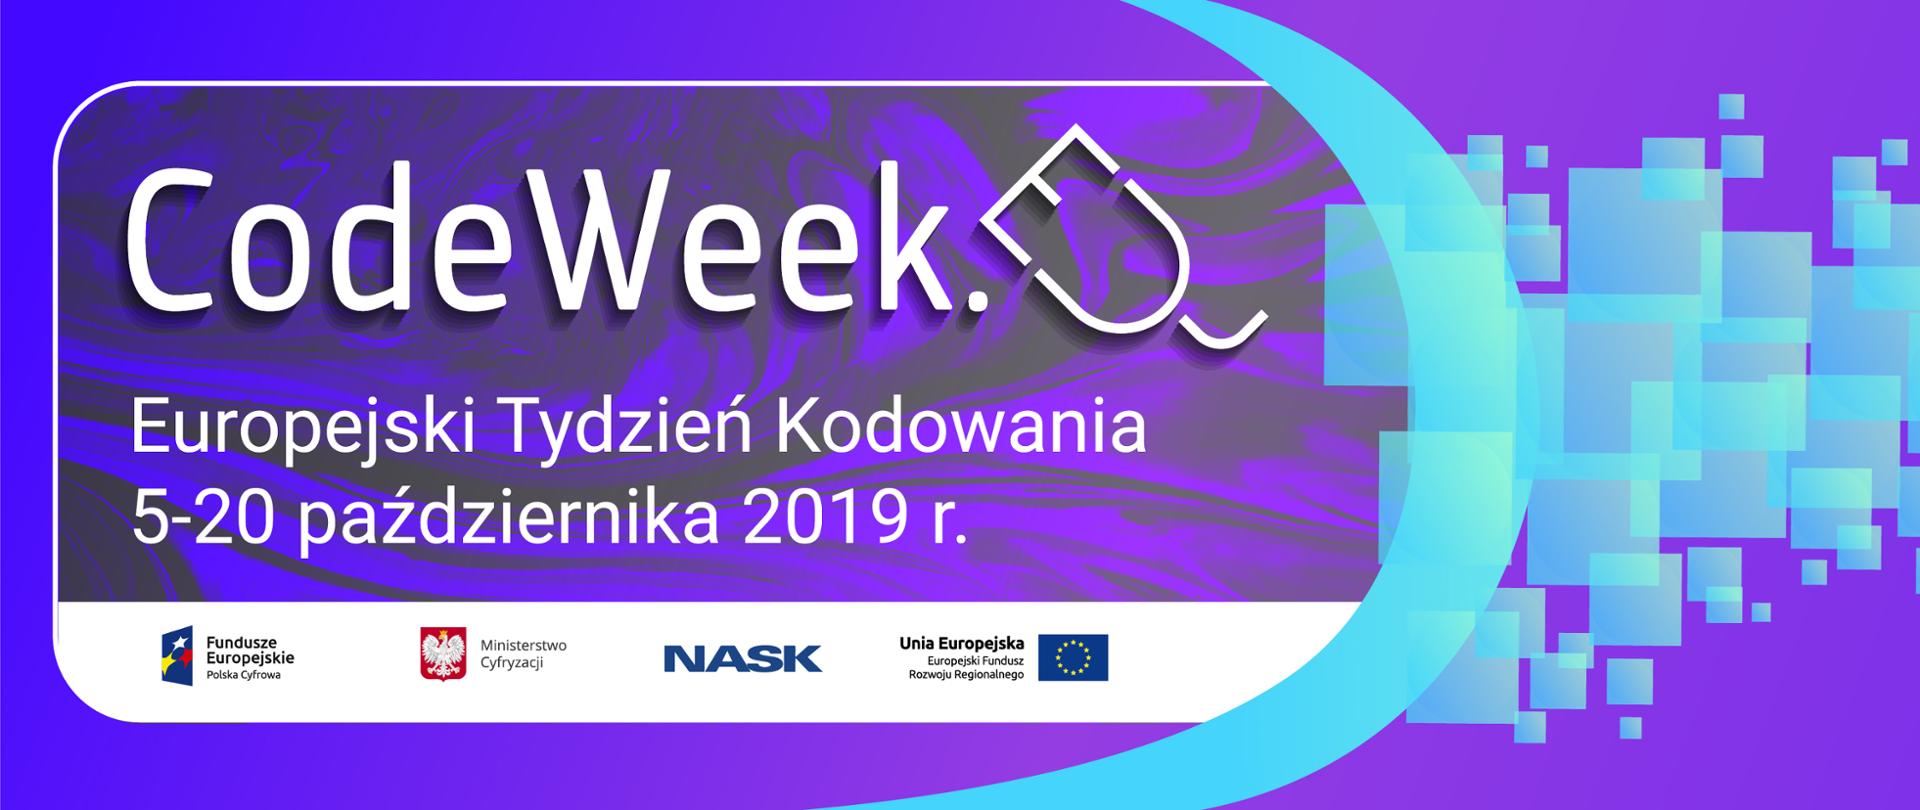 Napis: CodeWeek - Europejski Tydzień Kodowania. 5-20 października 2019 r. Pod napisem logotypy organizatorów.